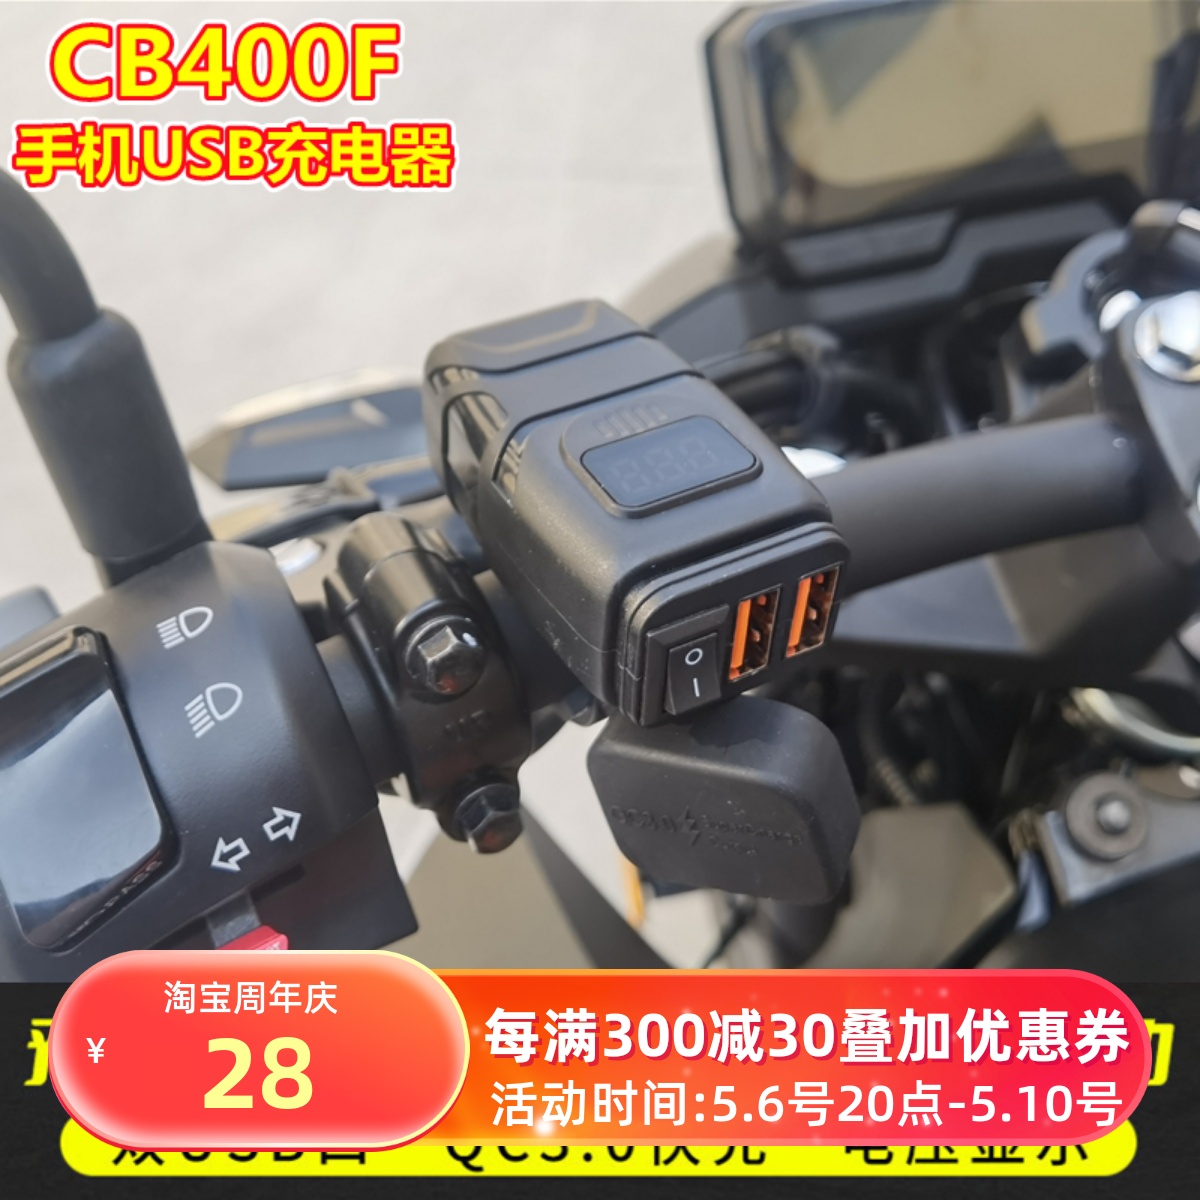 适用本田CB400F CBR400R手机USB充电器车载充电器QC3.0快充双USB